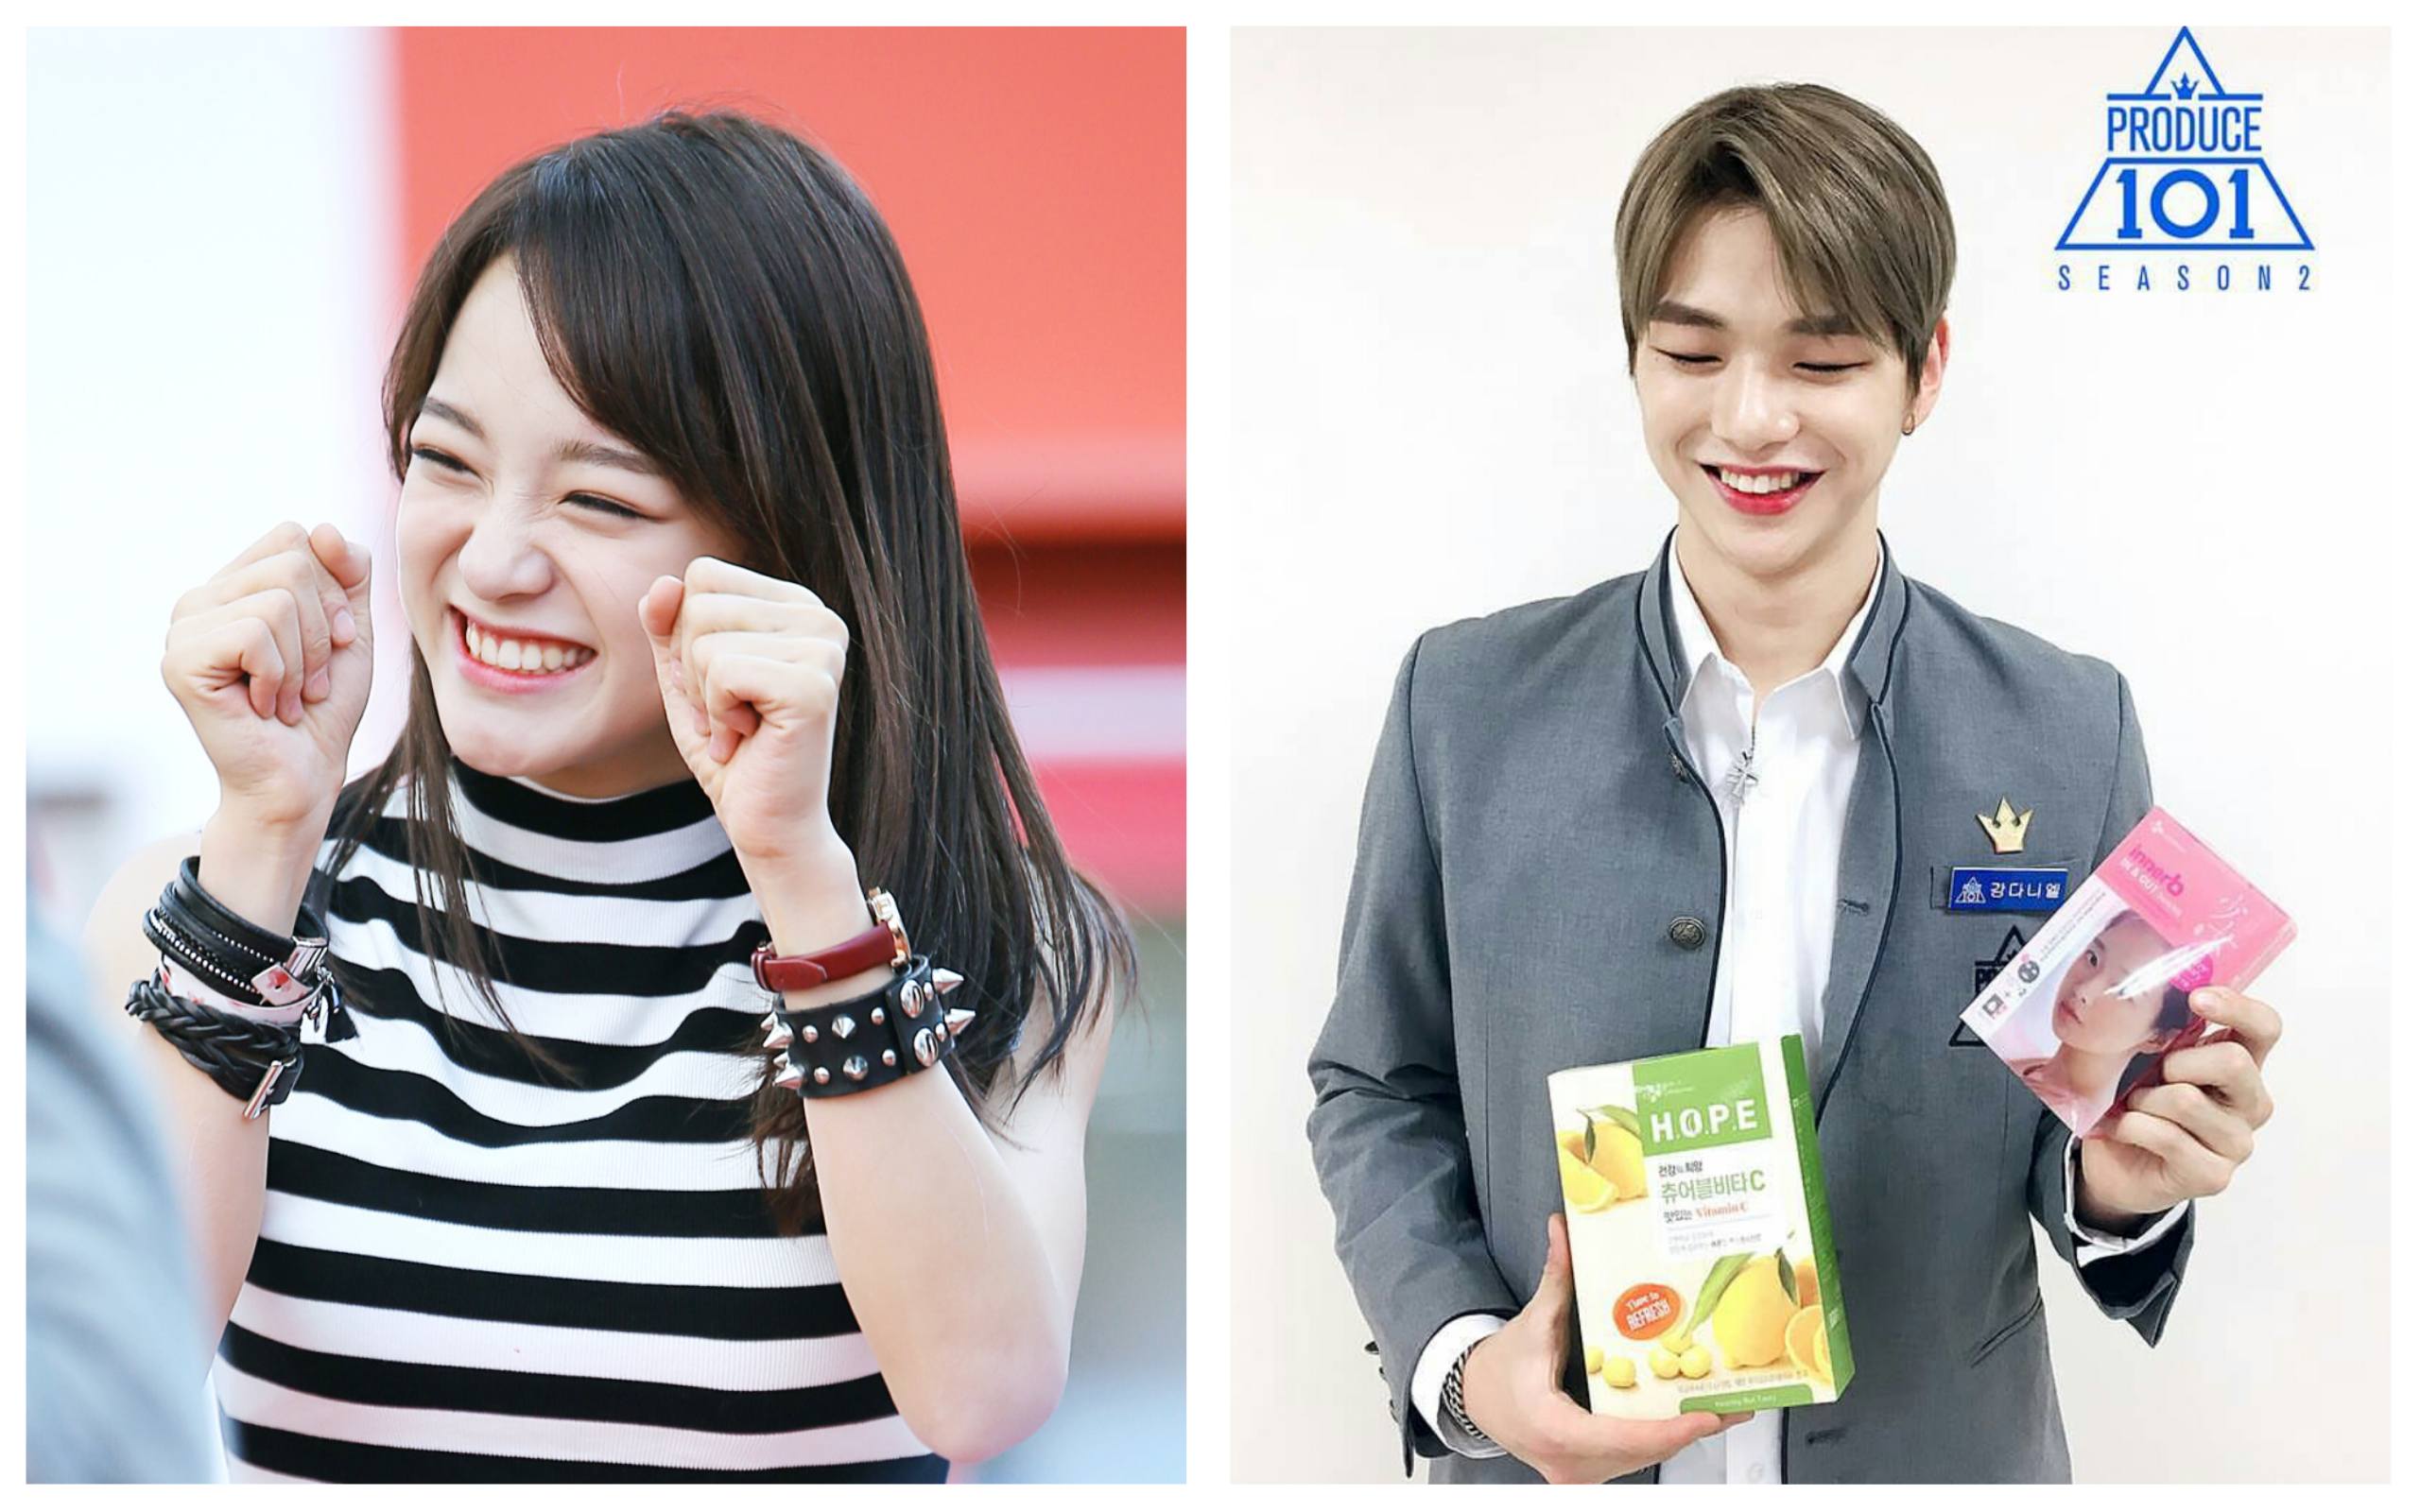 Поклонники выбрали двойников I.O.I из участников второго сезона "Produce 101"